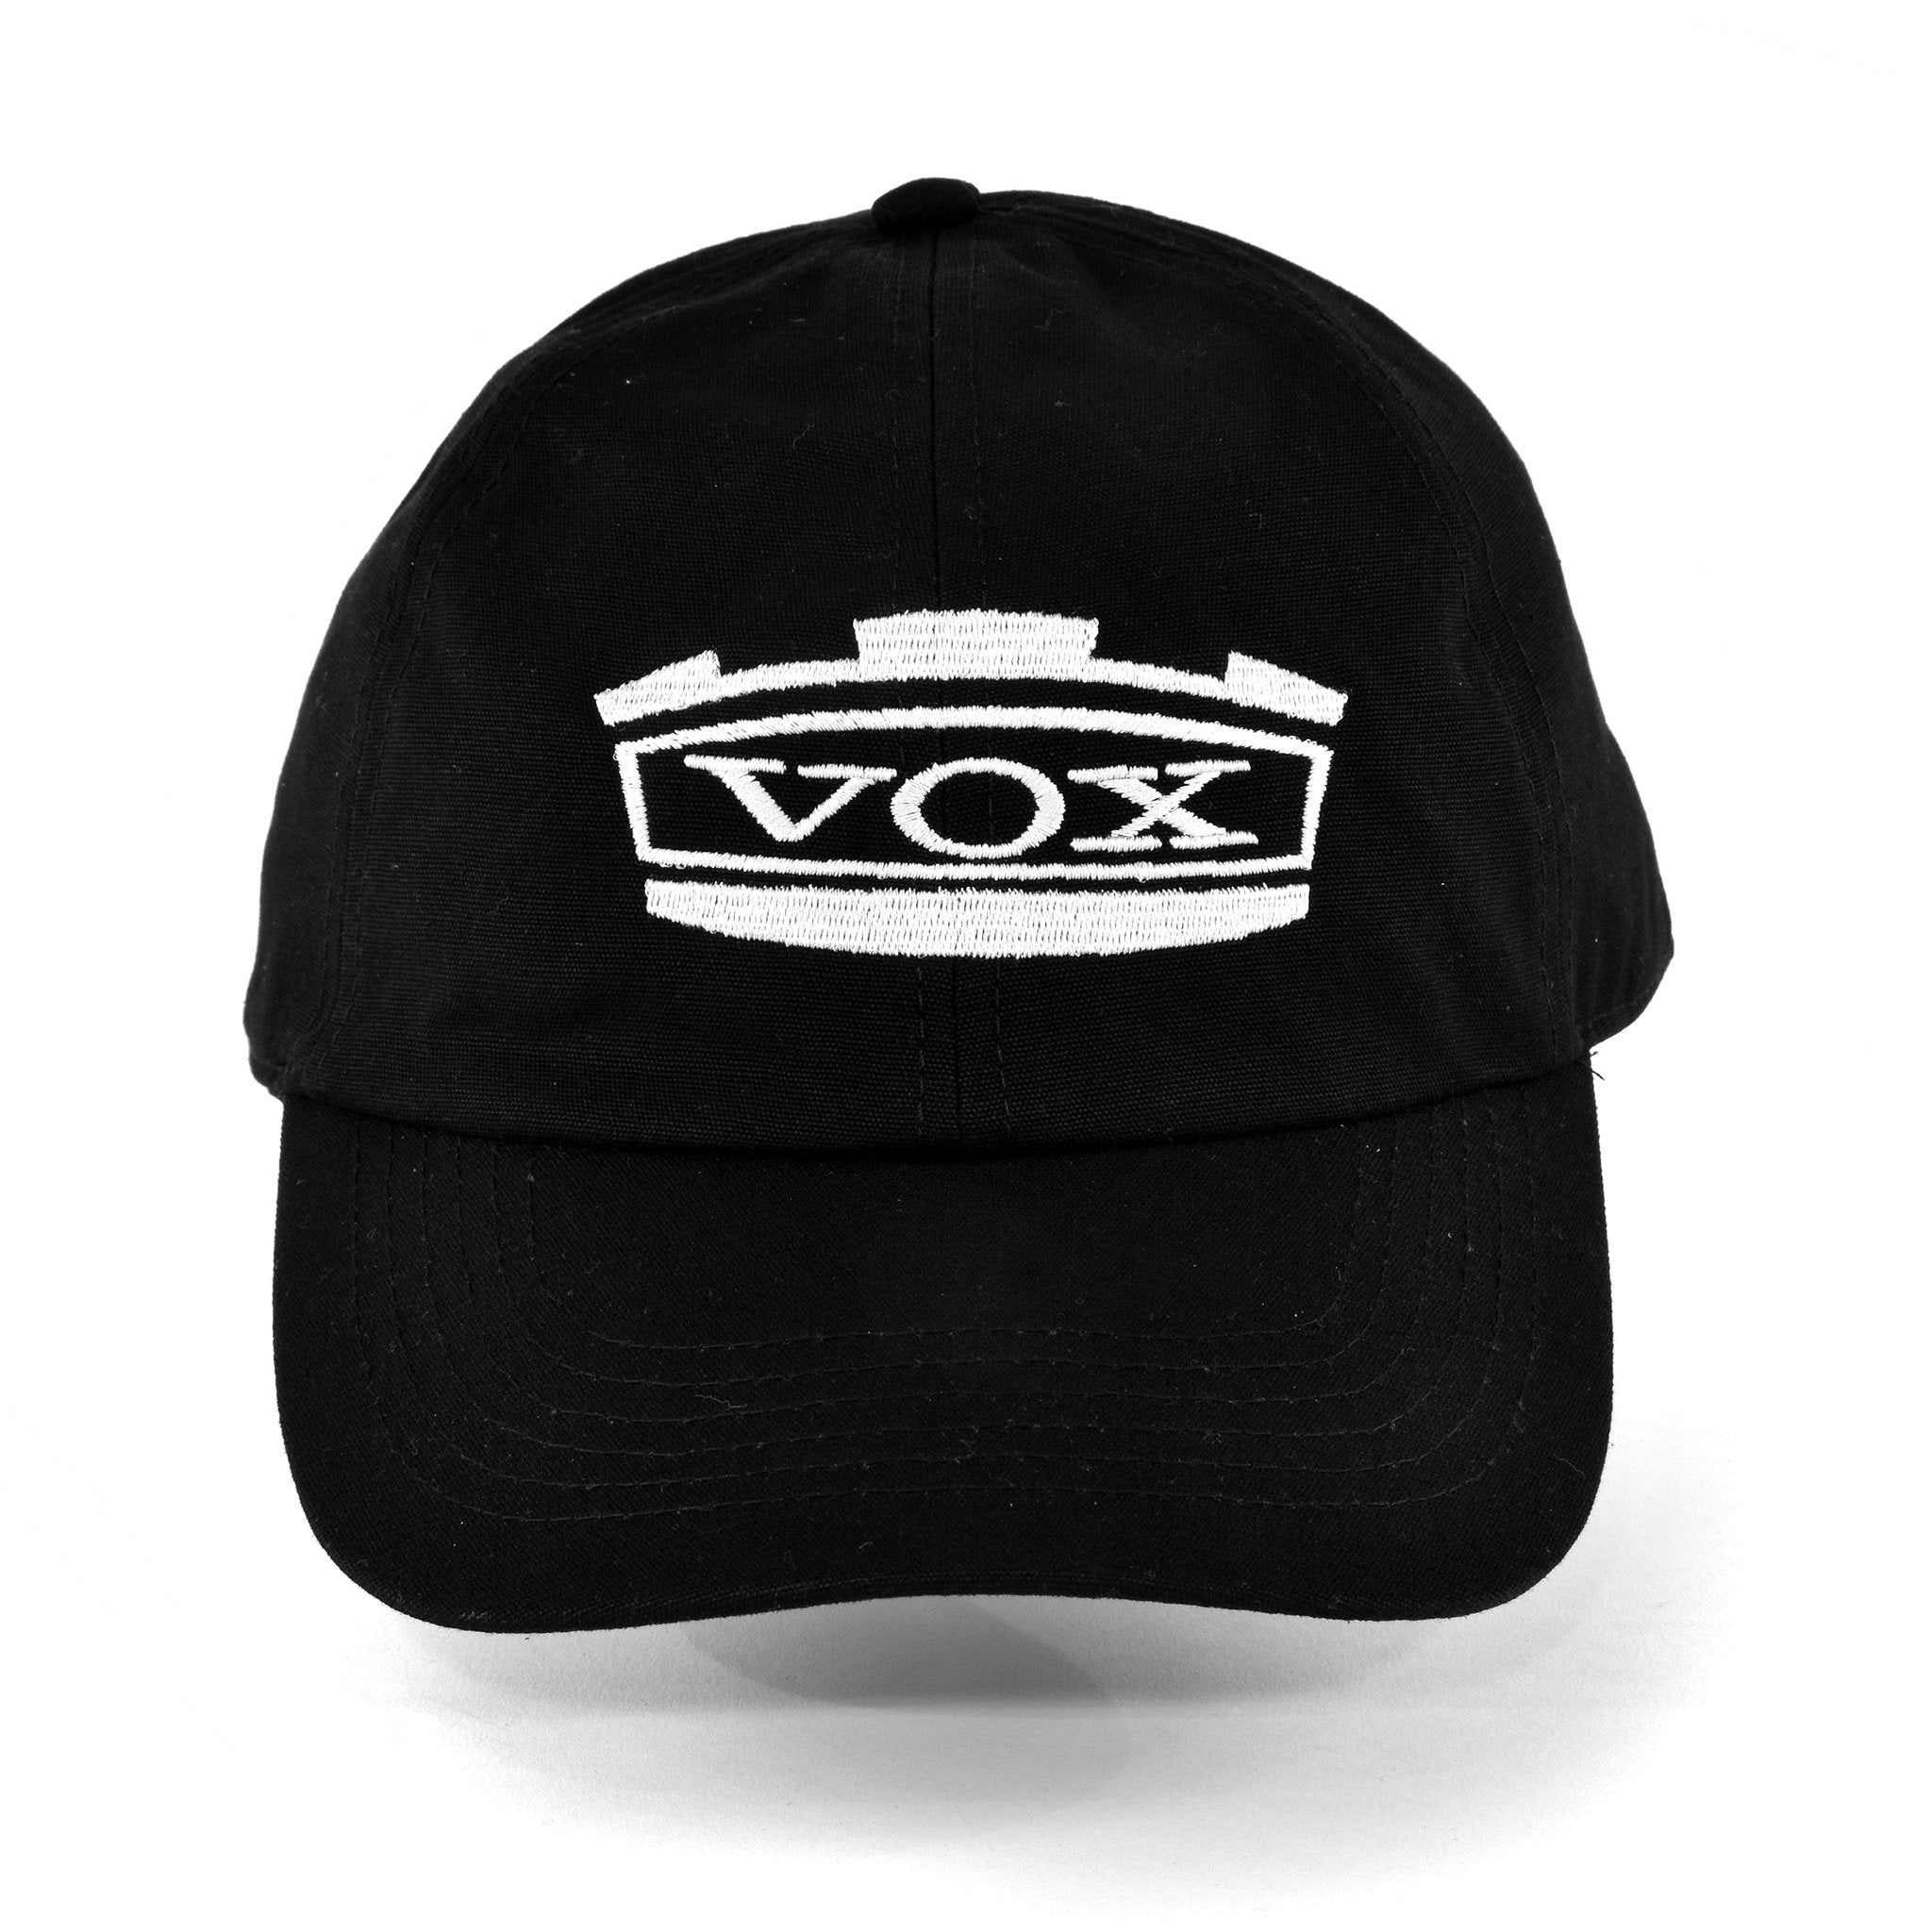 Vox Baseball Cap 4